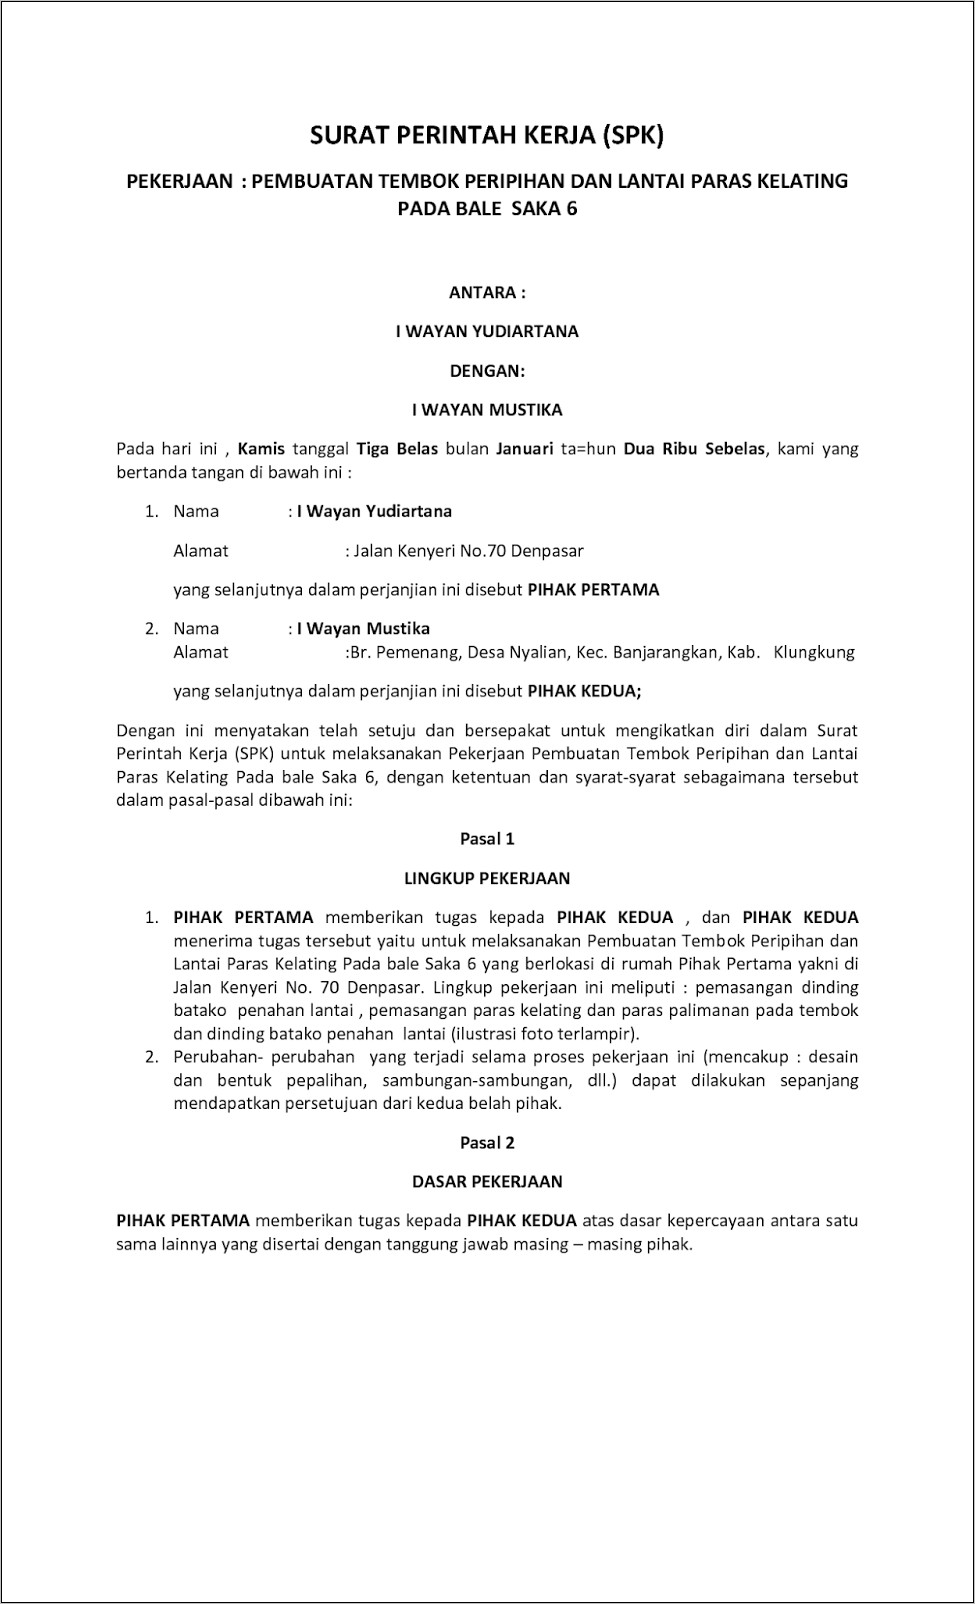 Contoh Surat Perintah Kerja Untuk Pemerintah Kampung